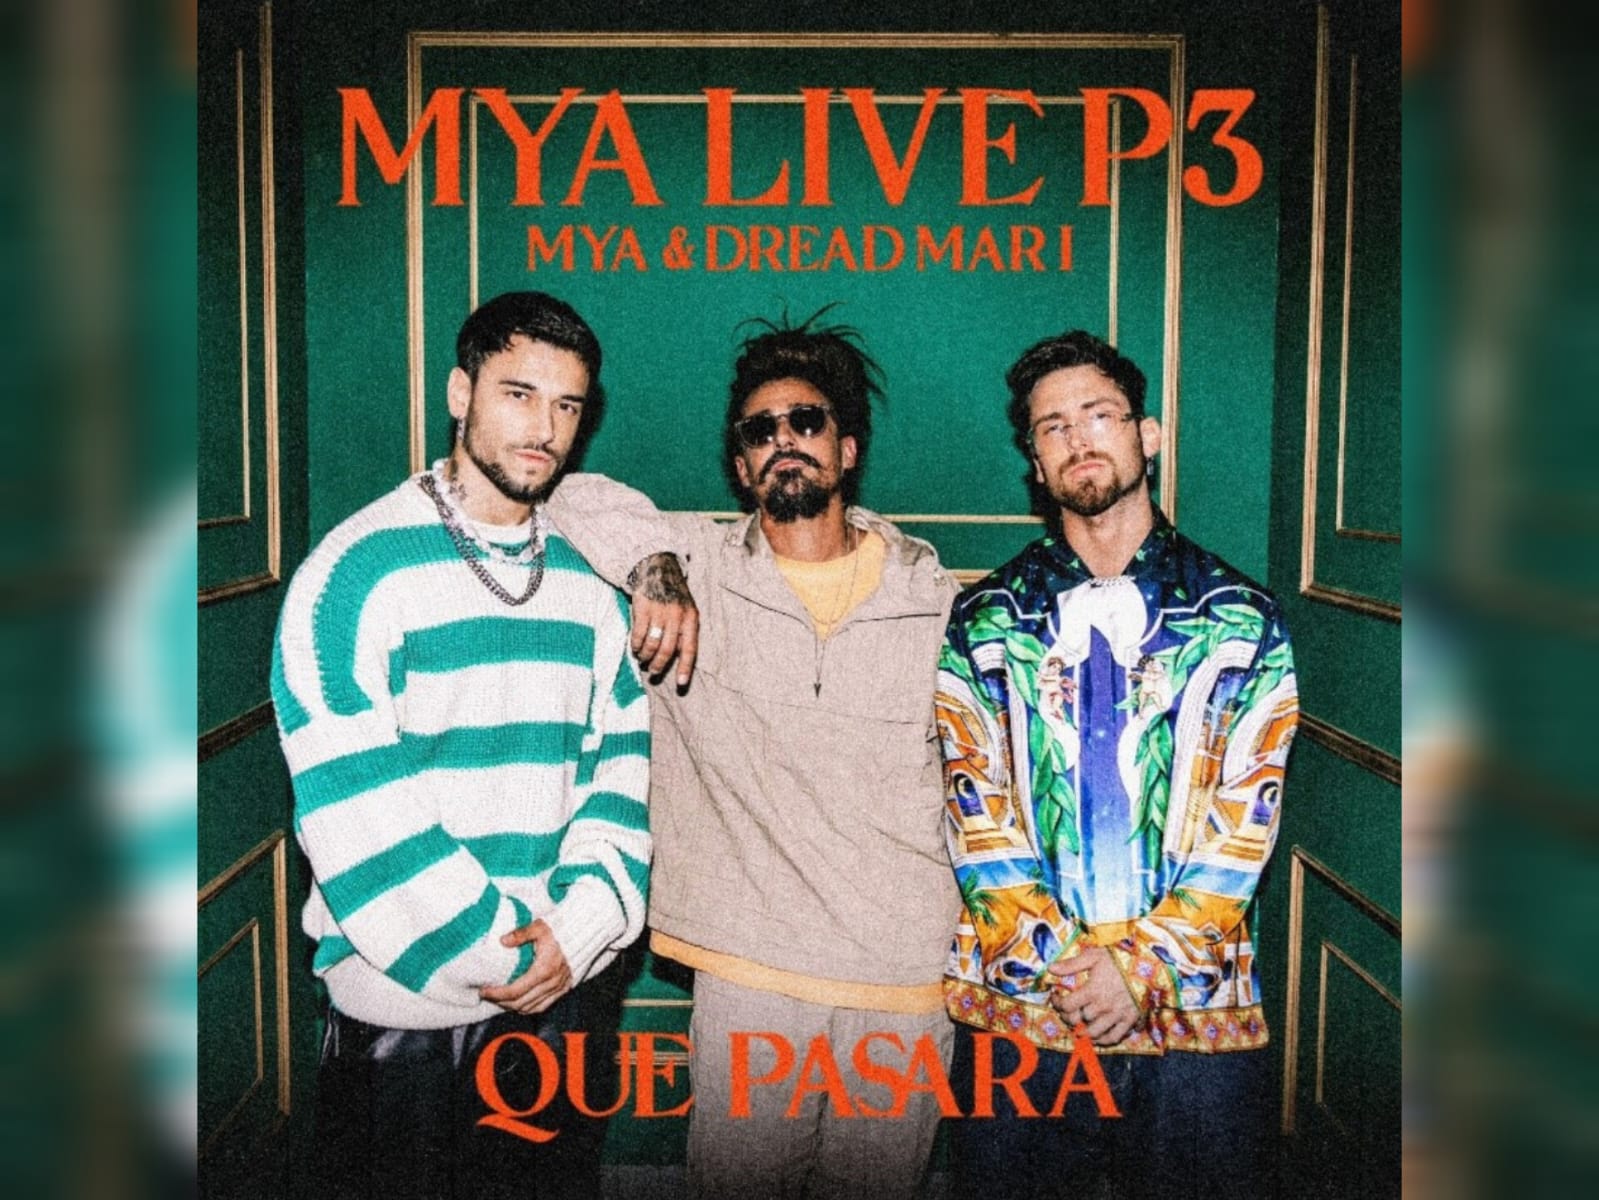 MYA presenta “MYA LIVE P3: Qué Pasará” junto a Dread Mar I